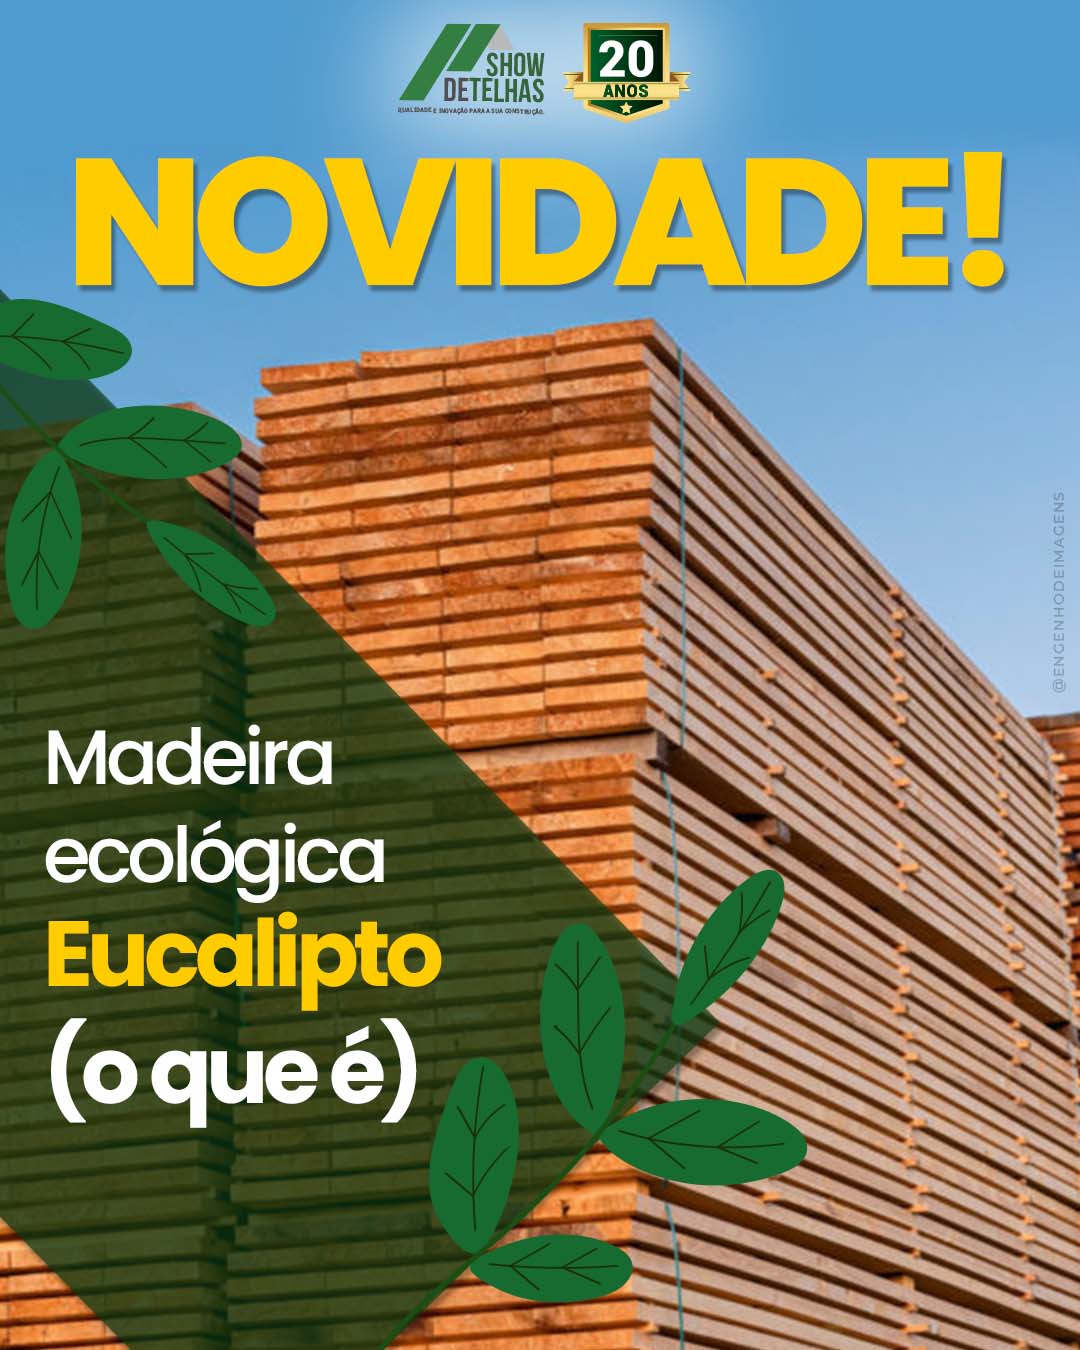 Novidade: madeira ecológica de Eucalipto